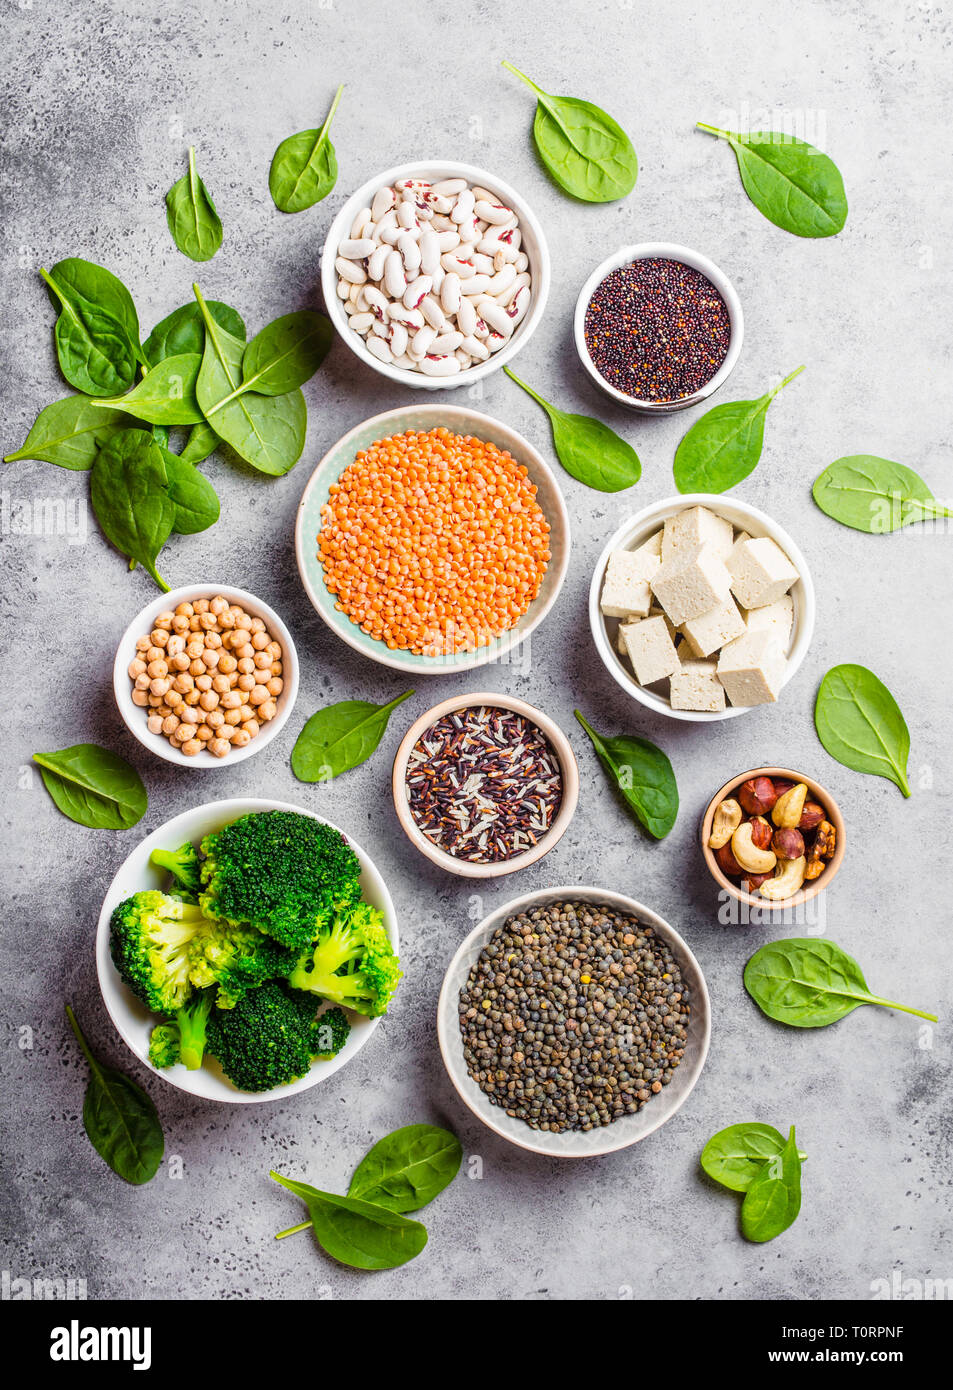 Les sources de protéines végétaliennes Banque D'Images